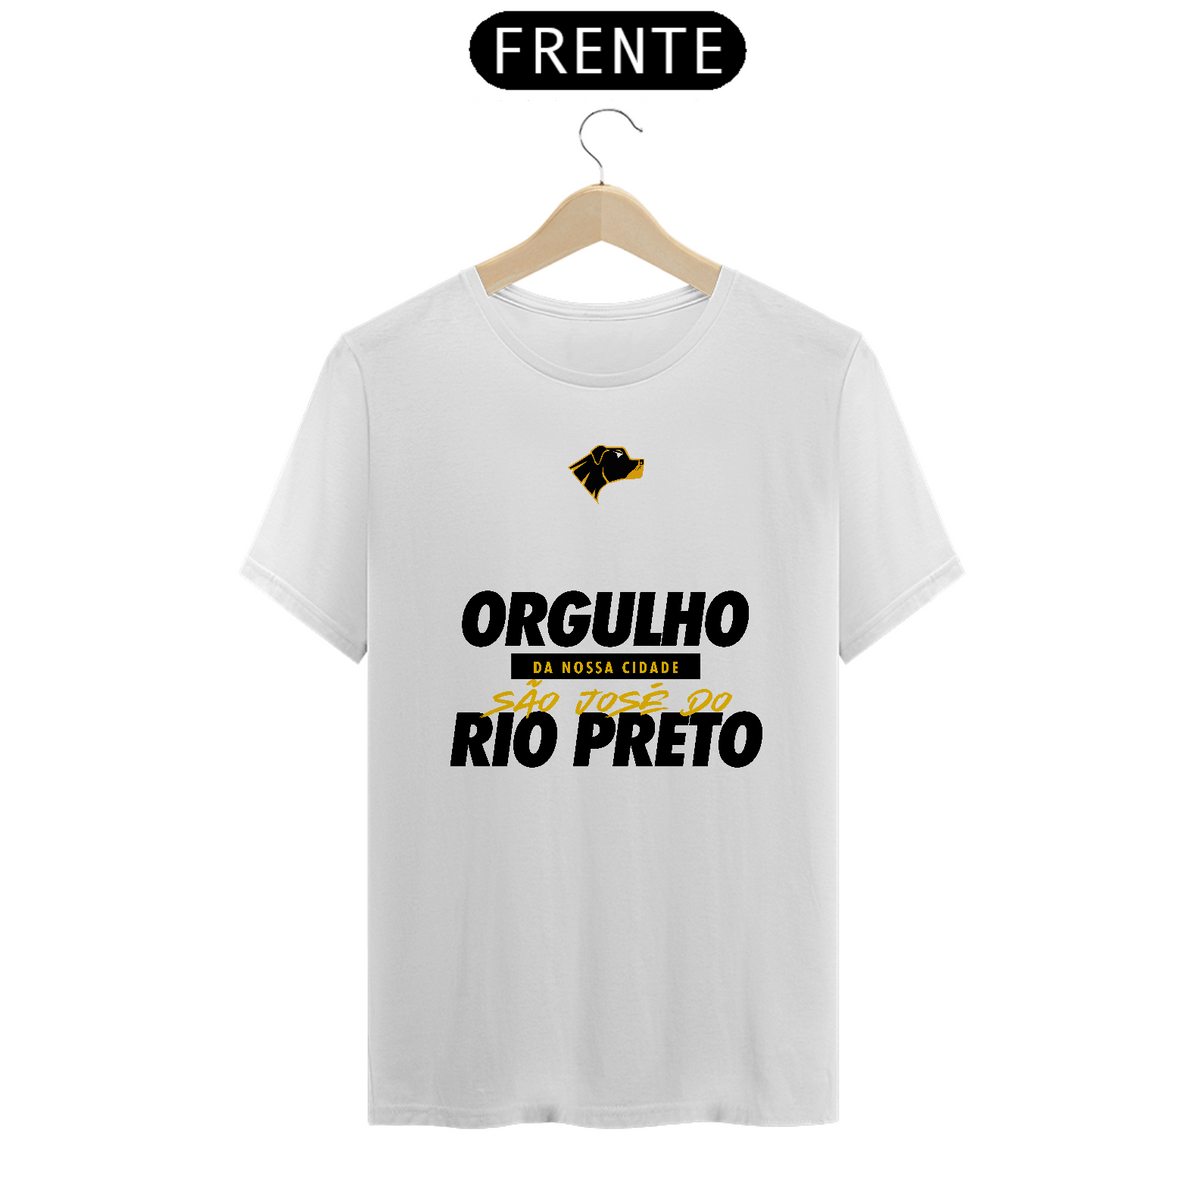 Nome do produto: Orgulho Rio Preto 